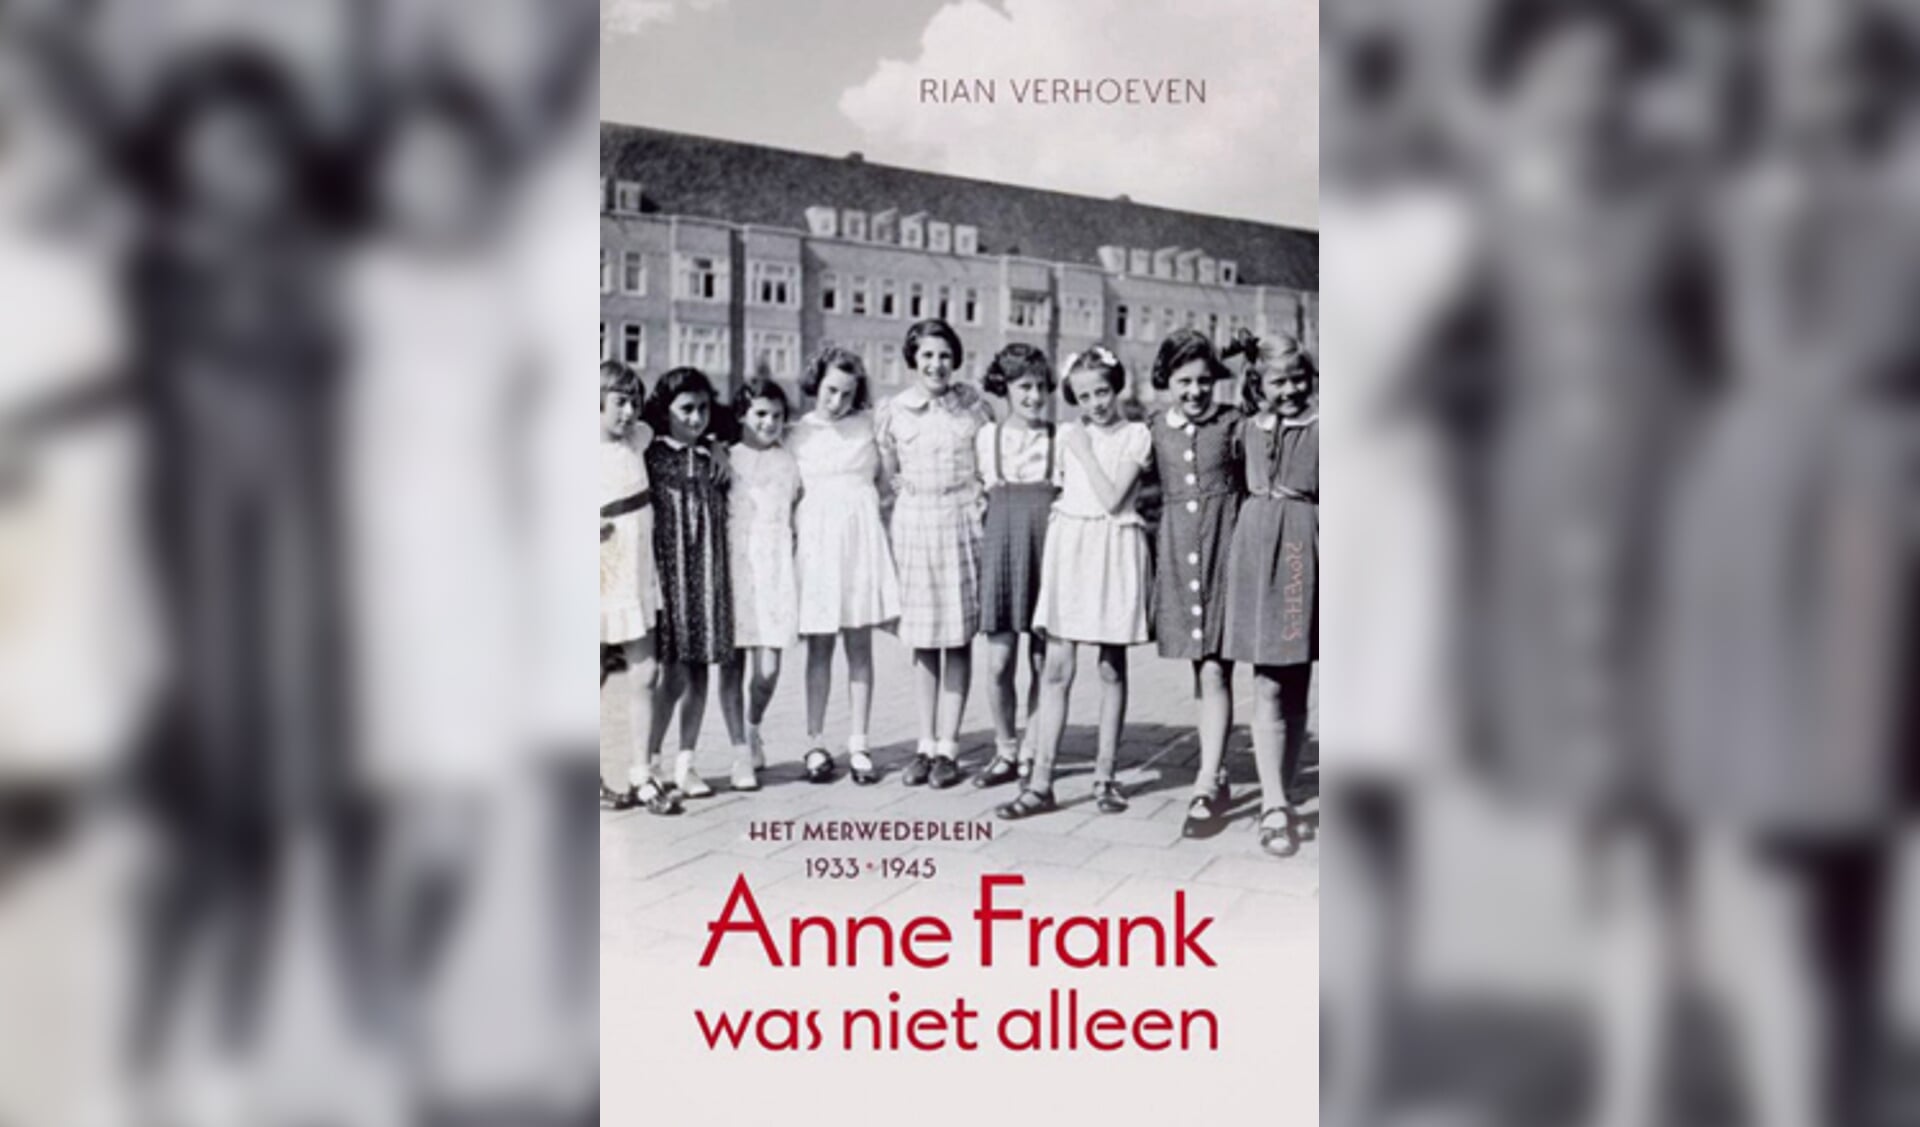 Lezing Anne Frank was niet alleen, door Rian Verhoeven op 14 januari 2020.